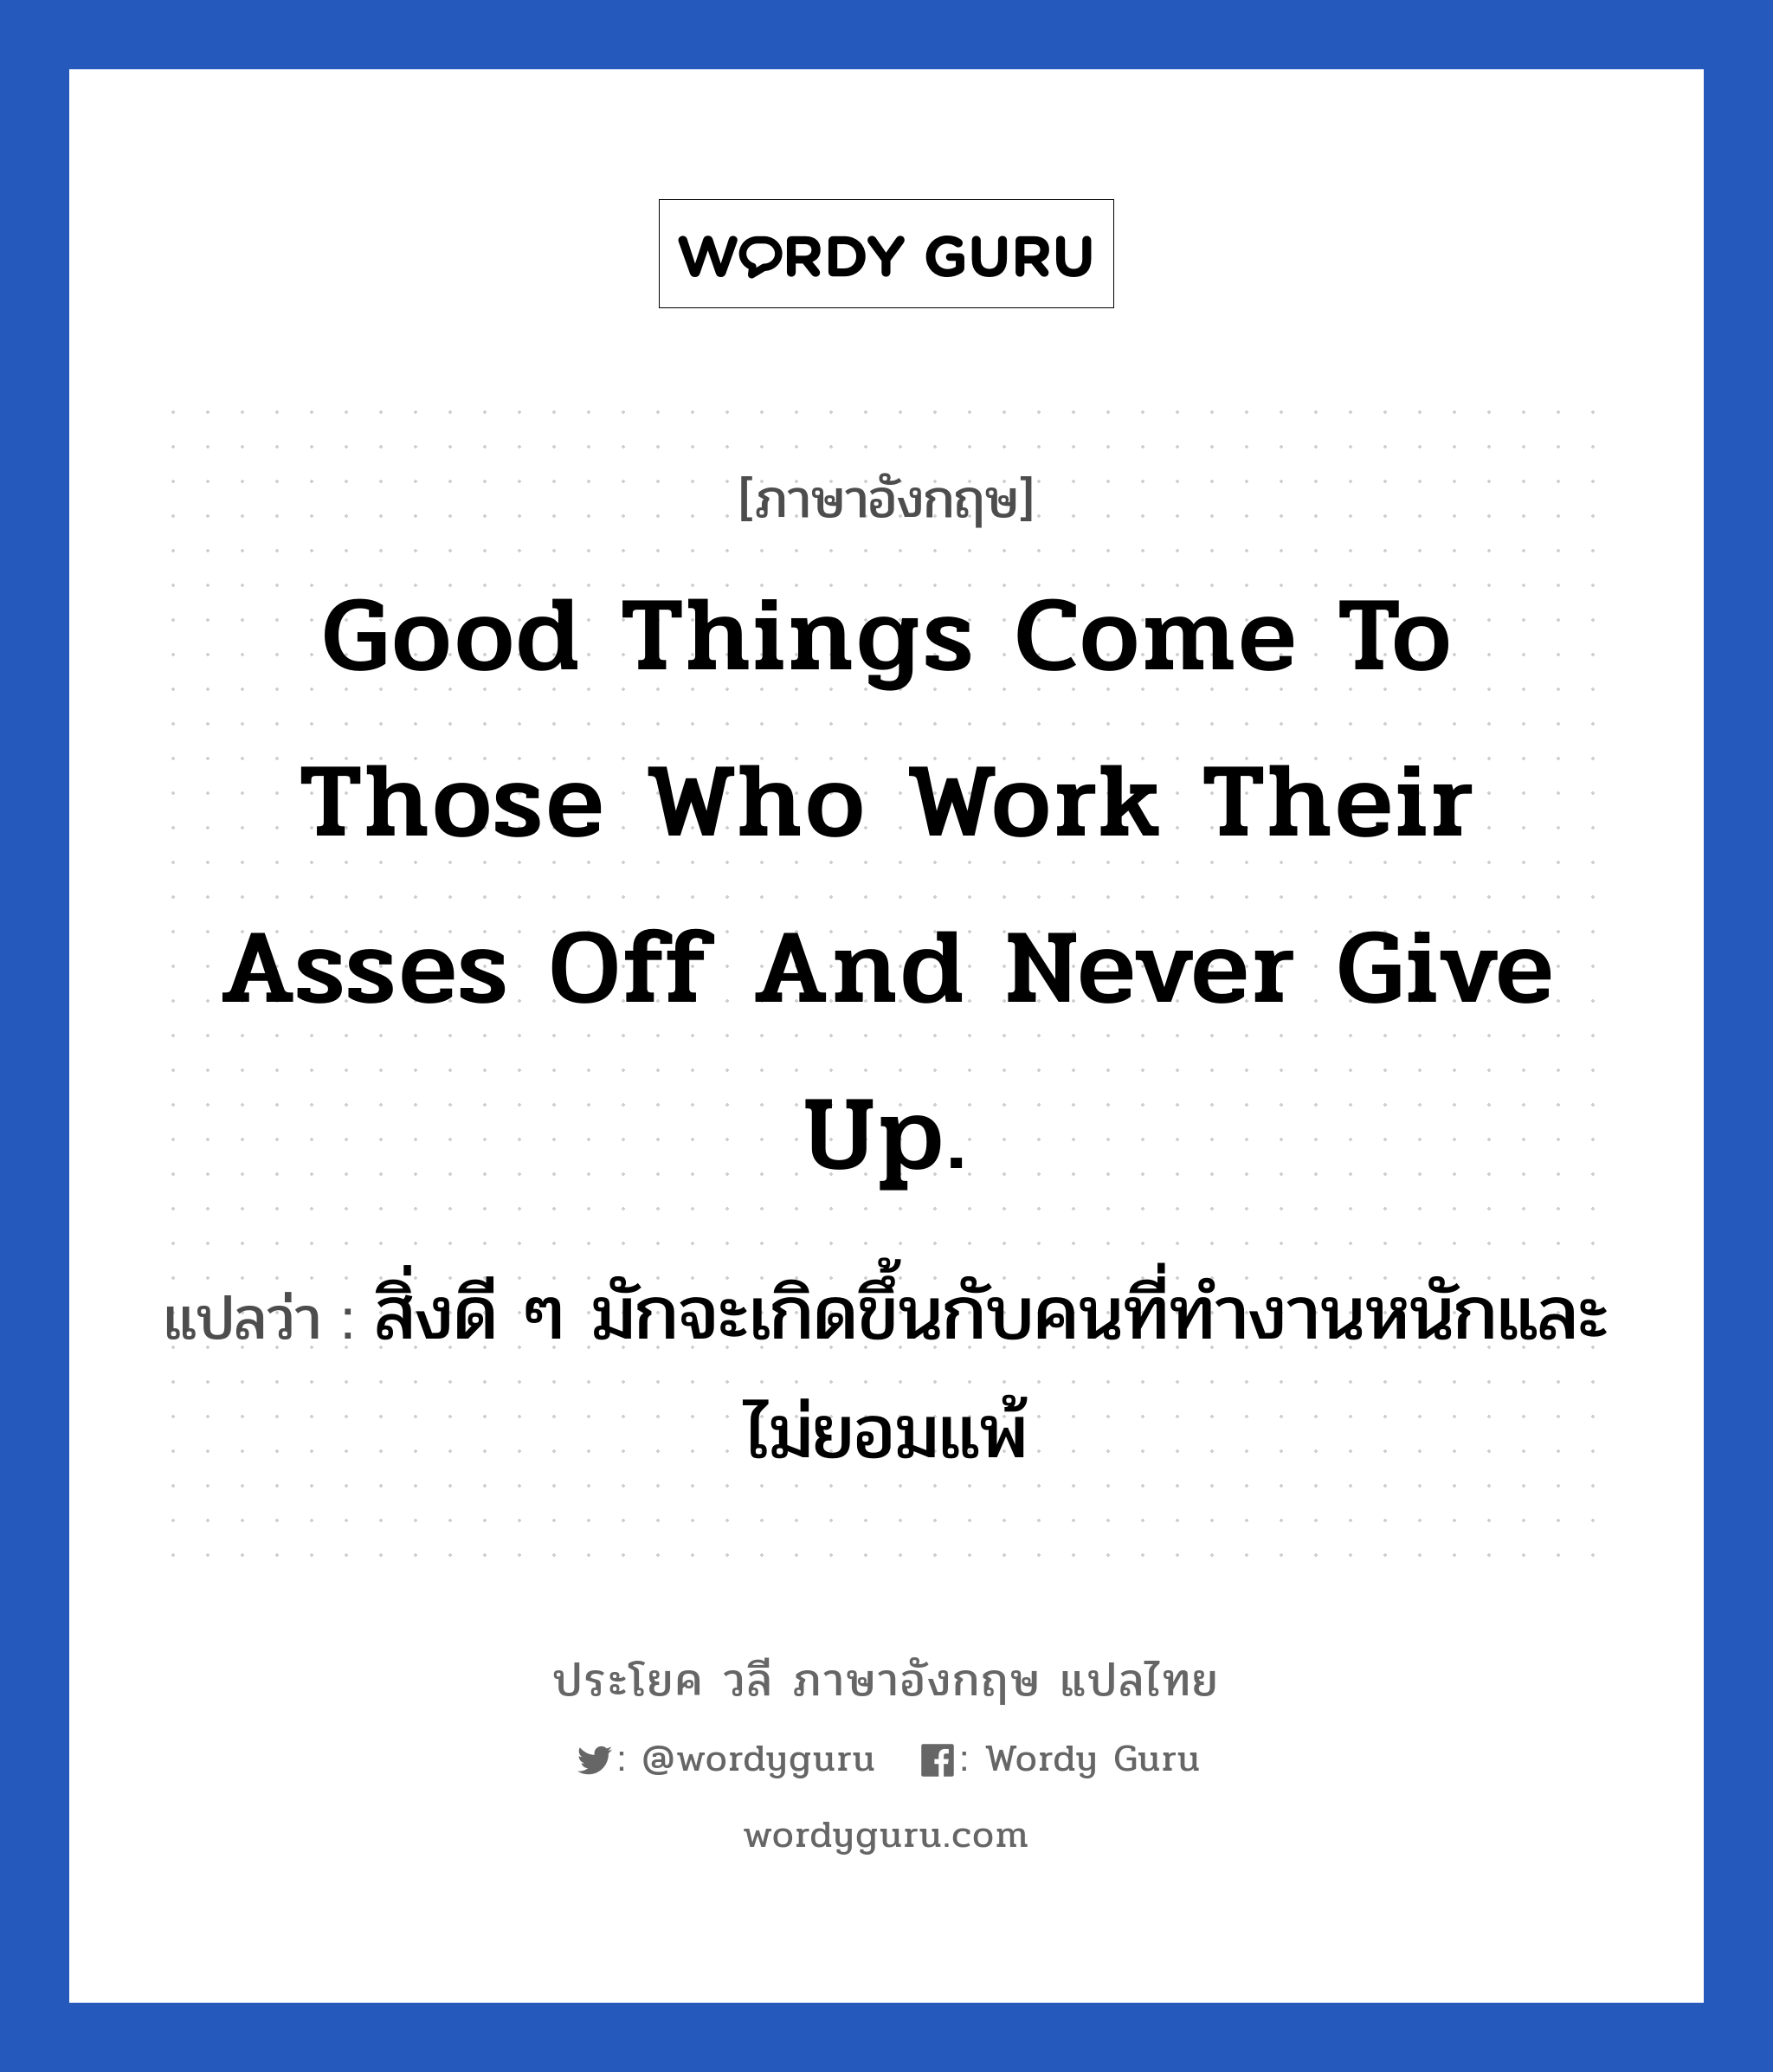 สิ่งดี ๆ มักจะเกิดขึ้นกับคนที่ทำงานหนักและไม่ยอมแพ้ ภาษาอังกฤษ?, วลีภาษาอังกฤษ สิ่งดี ๆ มักจะเกิดขึ้นกับคนที่ทำงานหนักและไม่ยอมแพ้ แปลว่า Good things come to those who work their asses off and never give up. หมวด ในที่ทำงาน